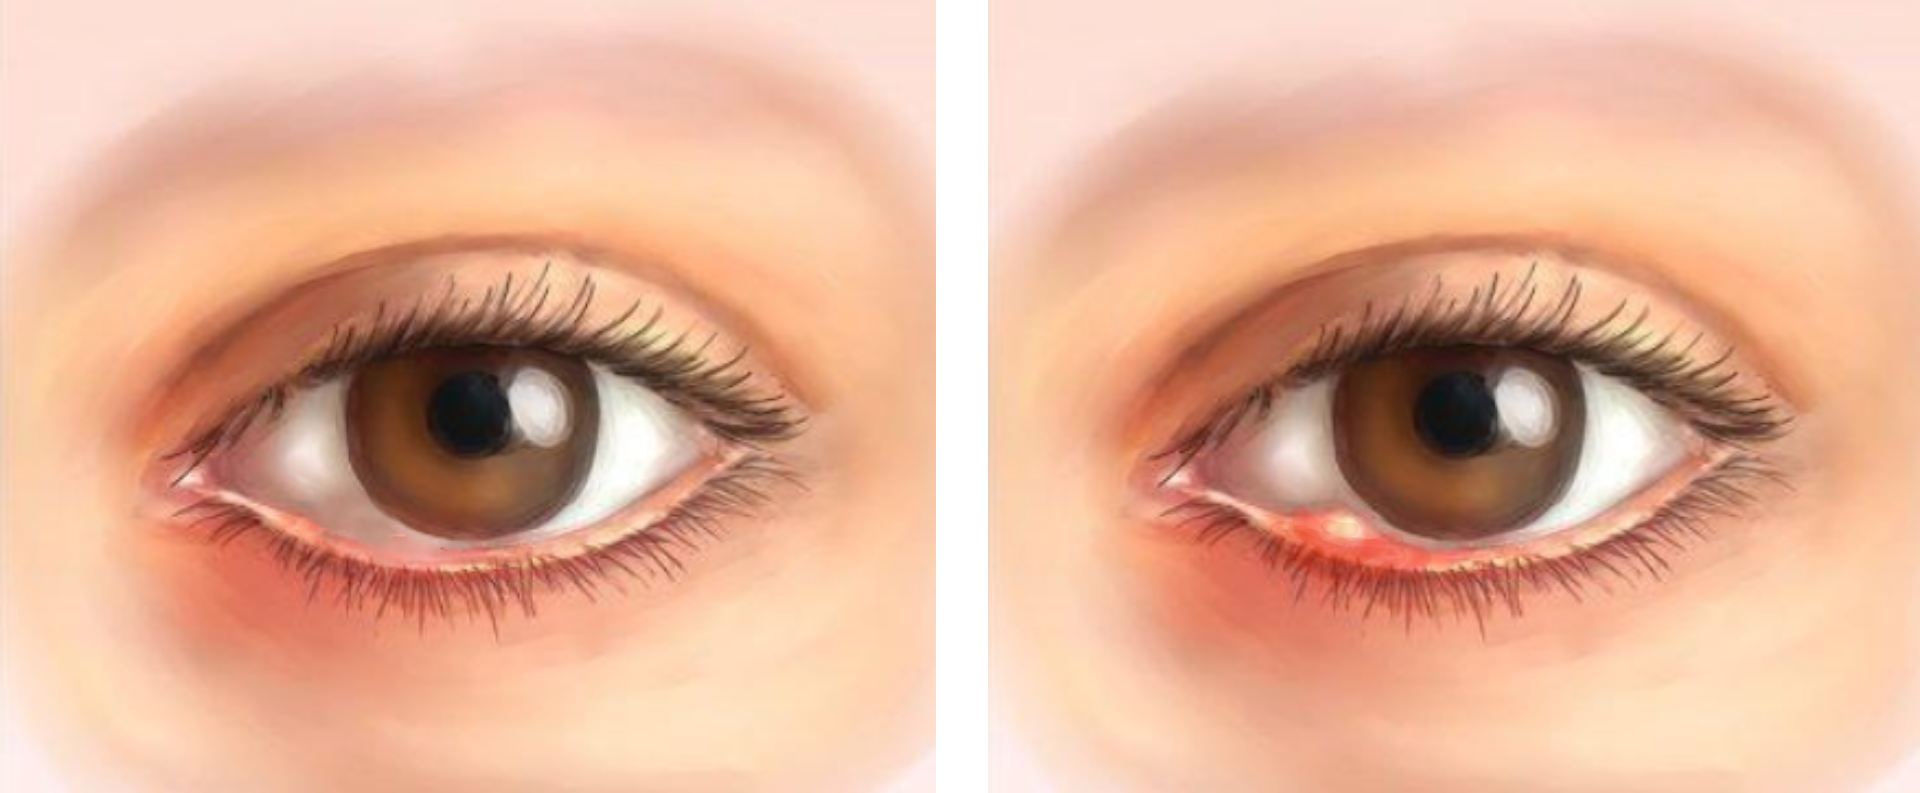 Лечение ячменя на глазу, причины возникновения ячменя, виды, стадии и симптомы - Здравица